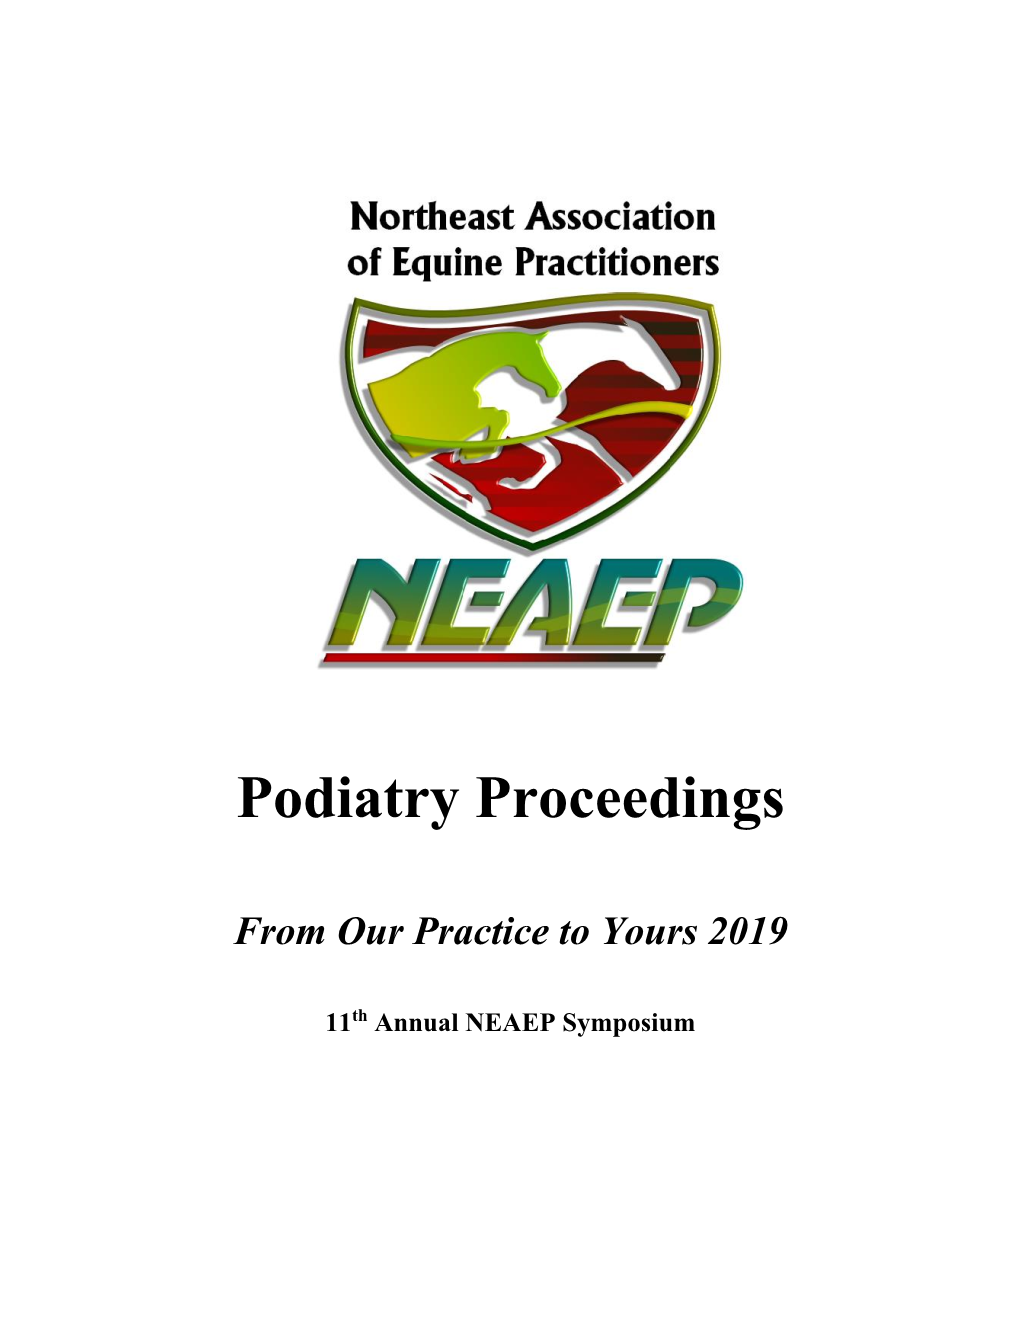 Podiatry Proceedings